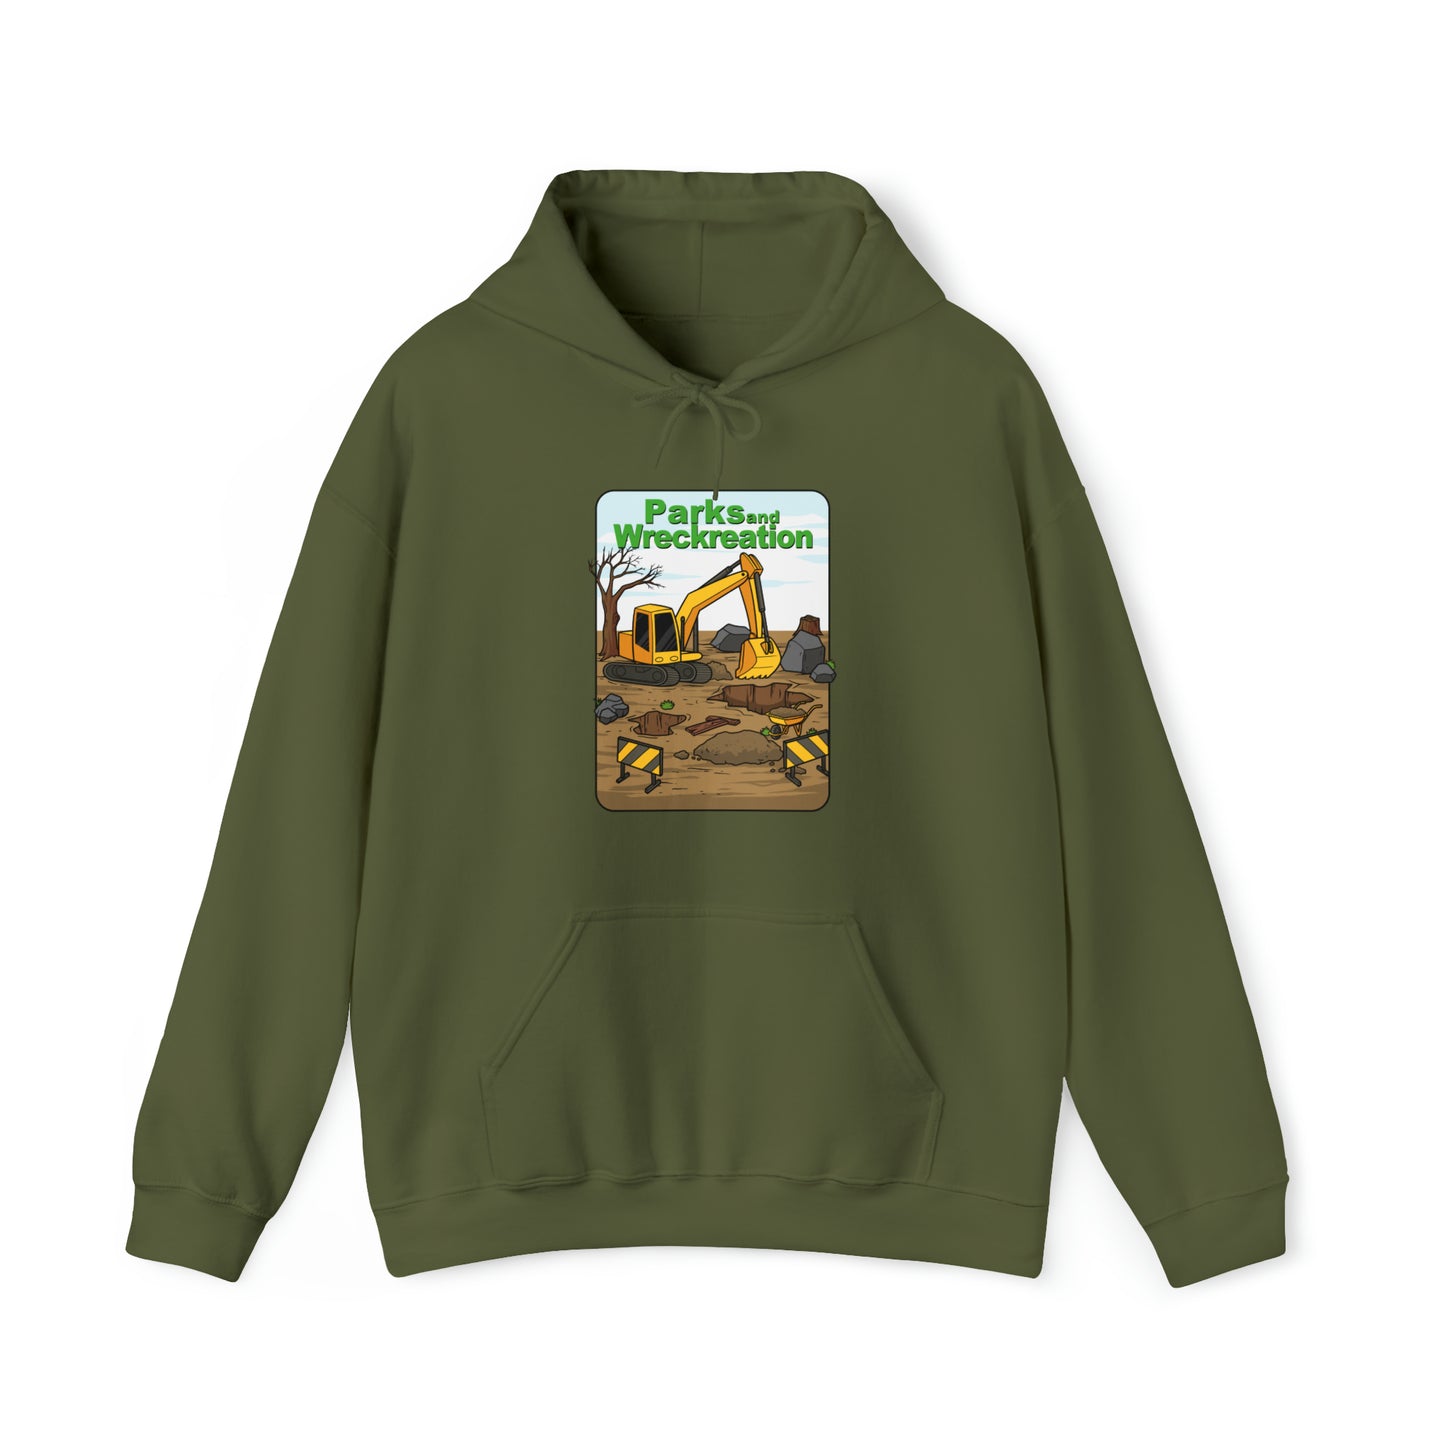 Custom Parody Hooded Sweatshirt, Parks N Wreckreation design